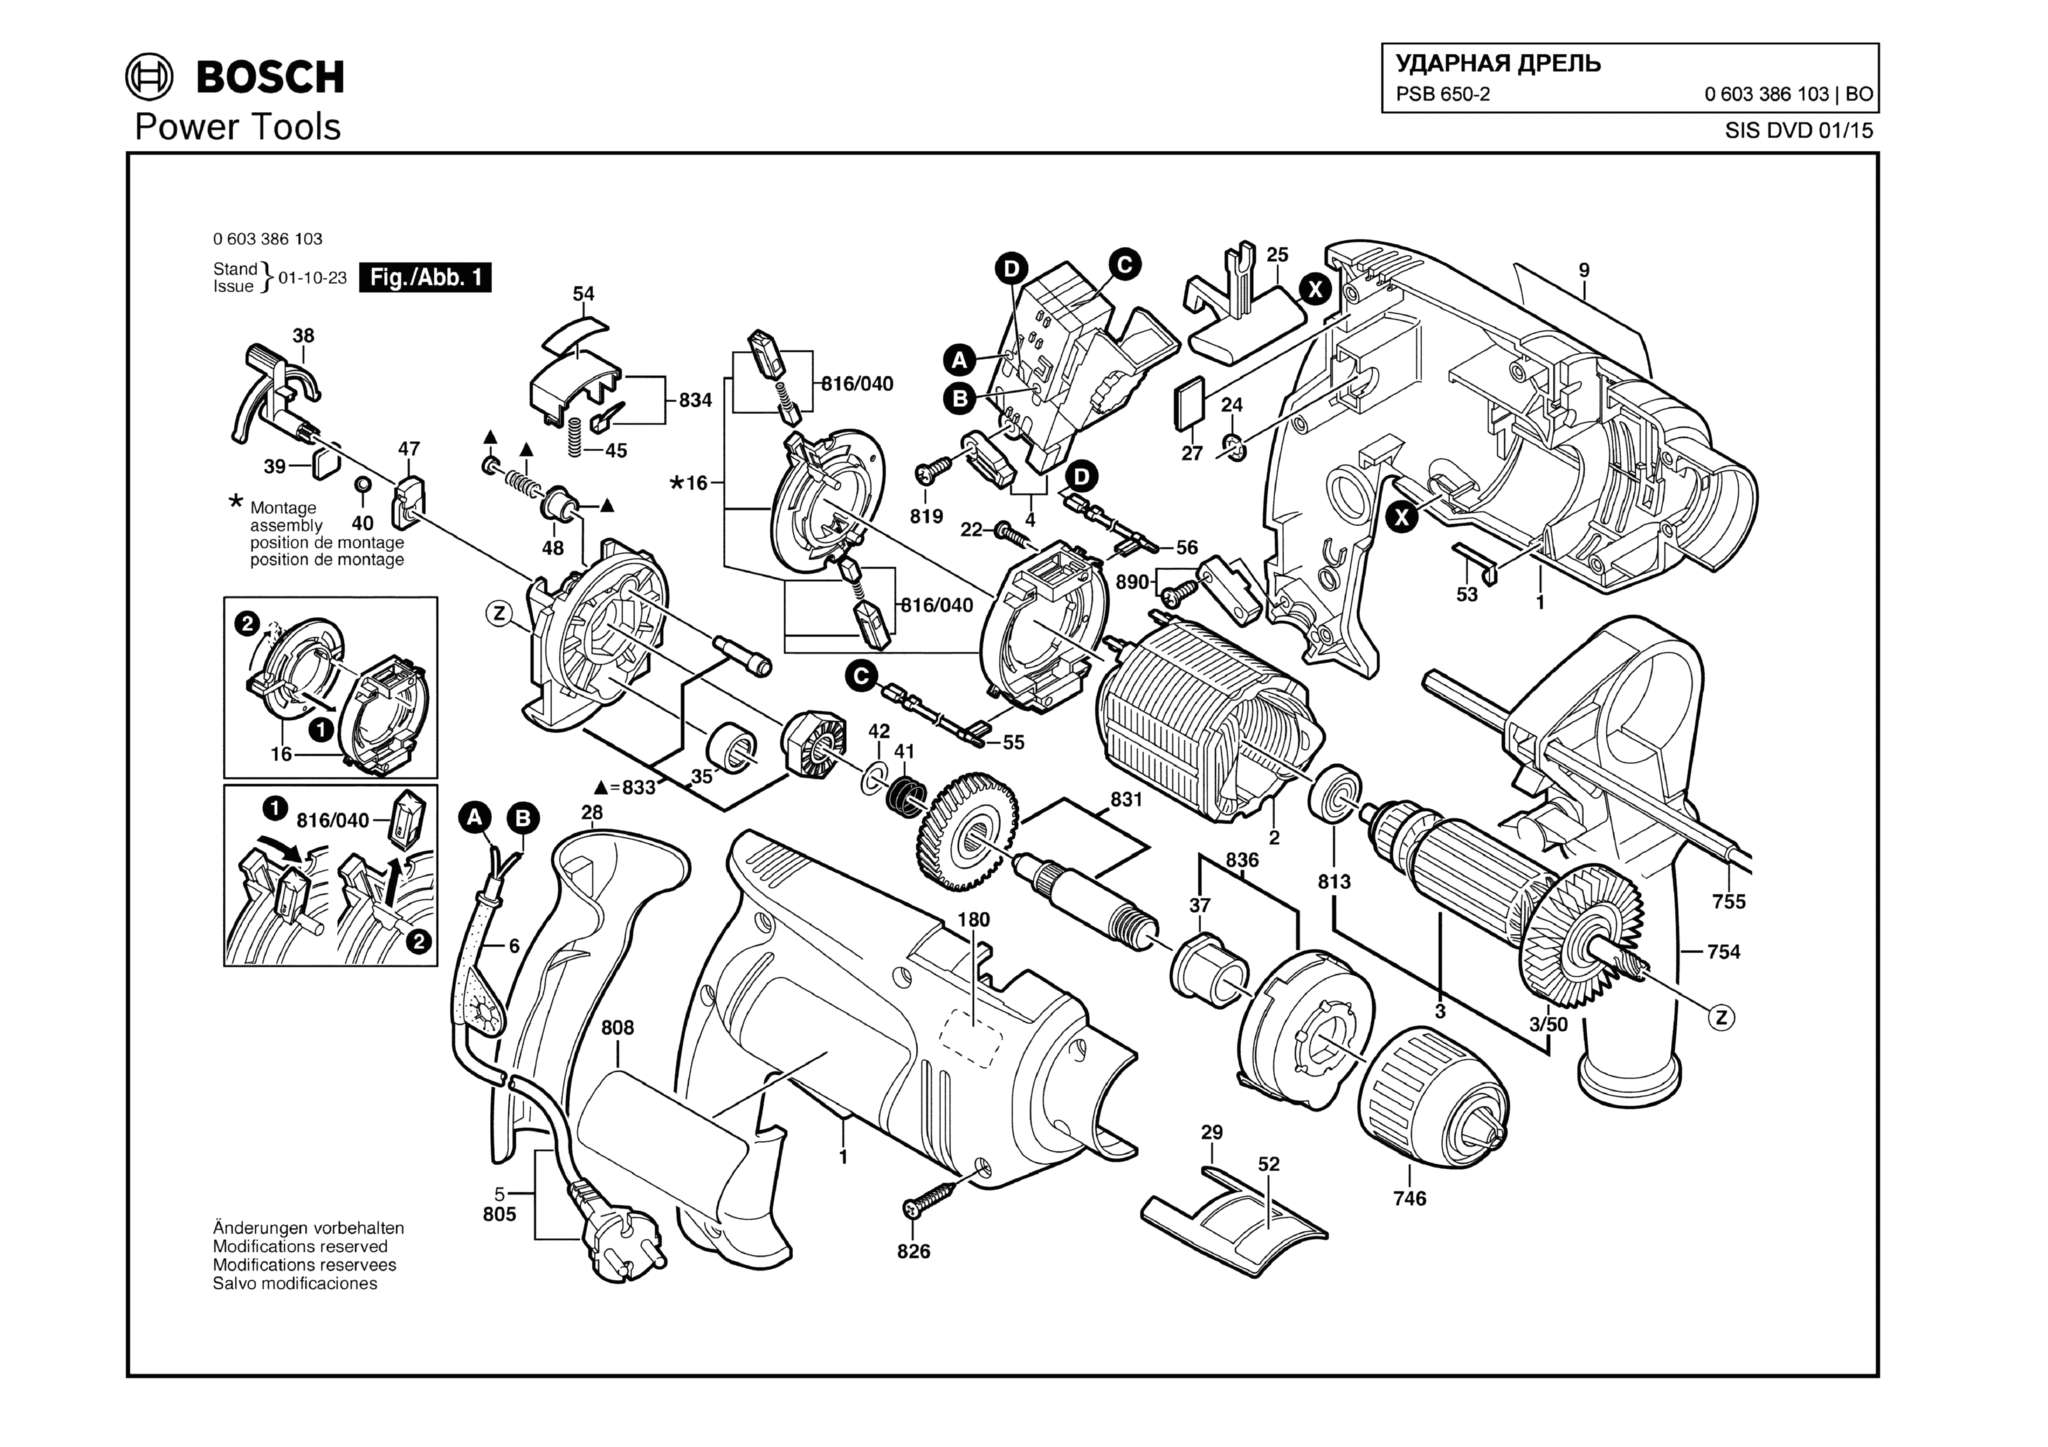 Запчасти, схема и деталировка Bosch PSB 650-2 (ТИП 0603386103)